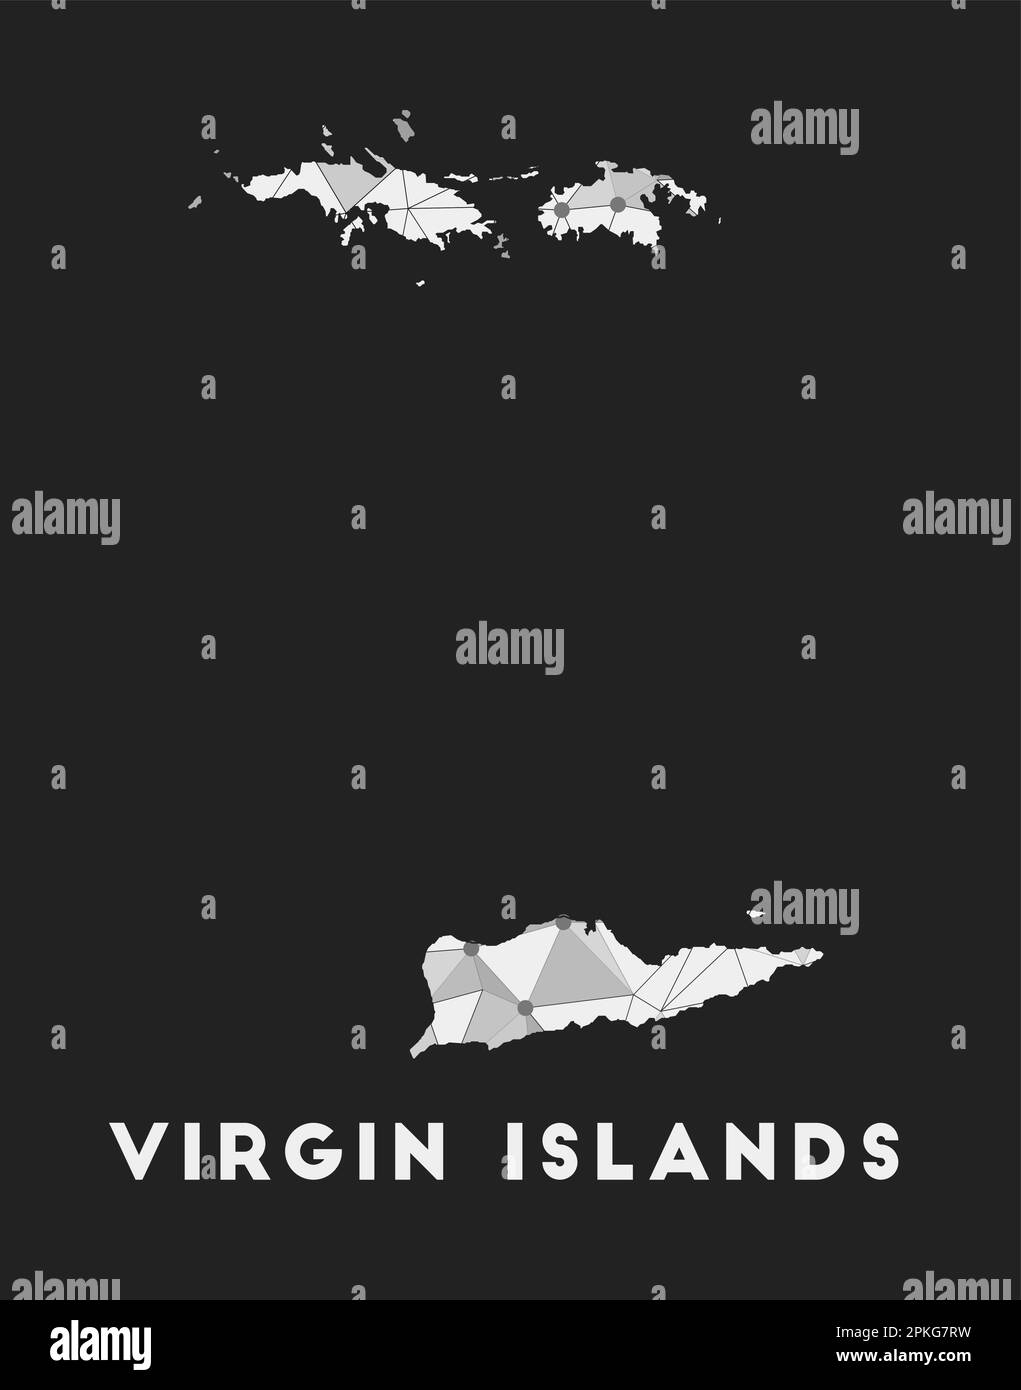 Îles Vierges - carte du réseau de communication de l'île. Motif géométrique tendance des îles Vierges sur fond sombre. Technologie, Internet, réseau, teleco Illustration de Vecteur